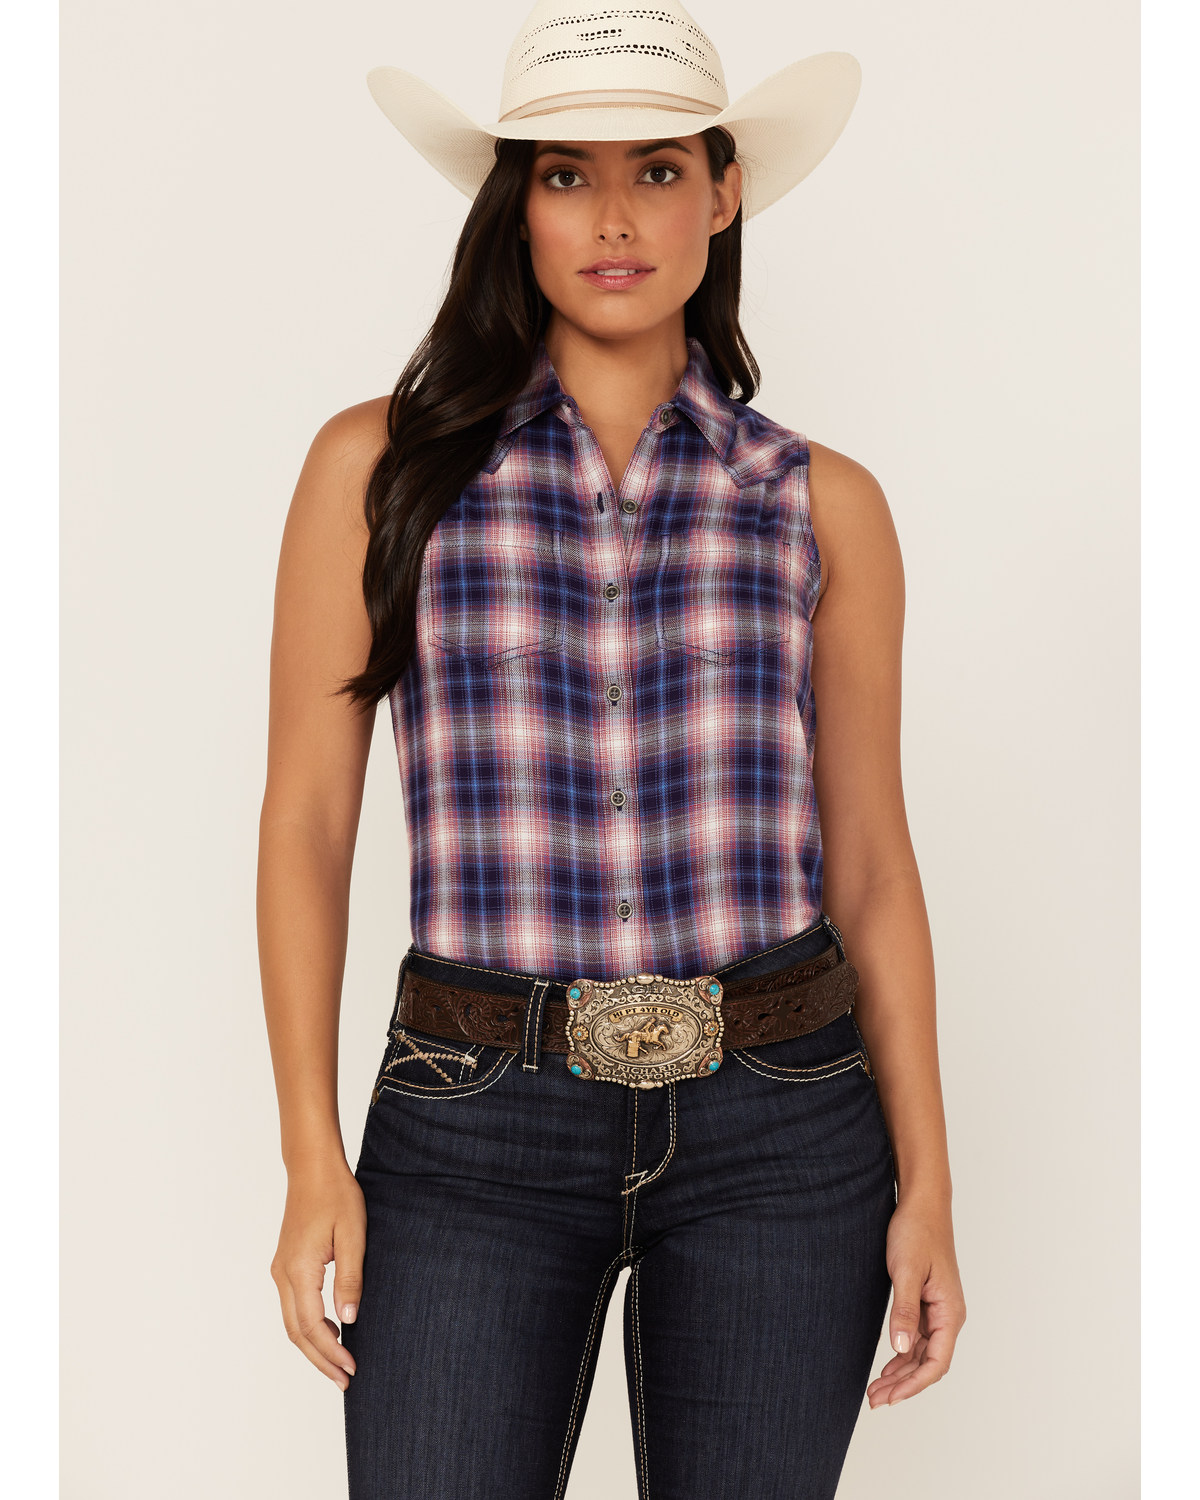 Ariat Women's R.E.A.L. Billie Jean Plaid Print Sleeveless Button-Down Western Shirt